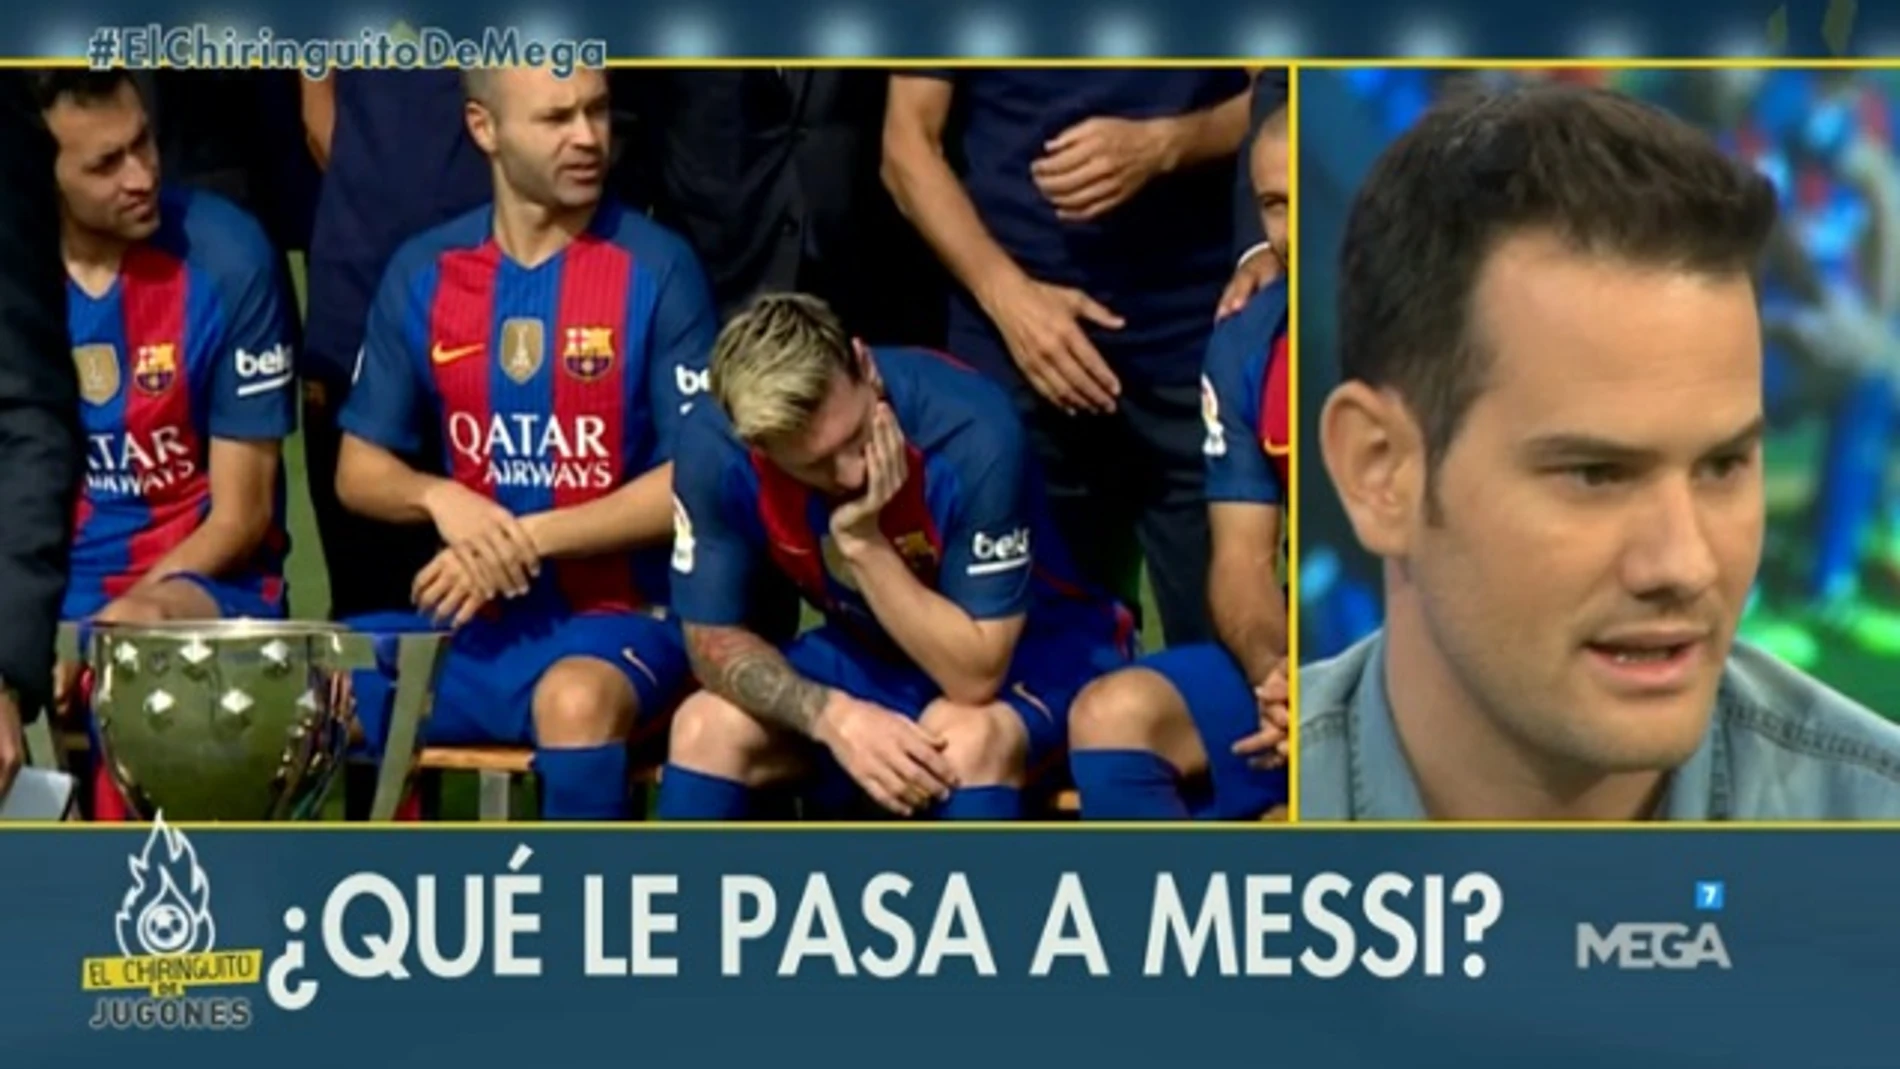 Quim de Messi